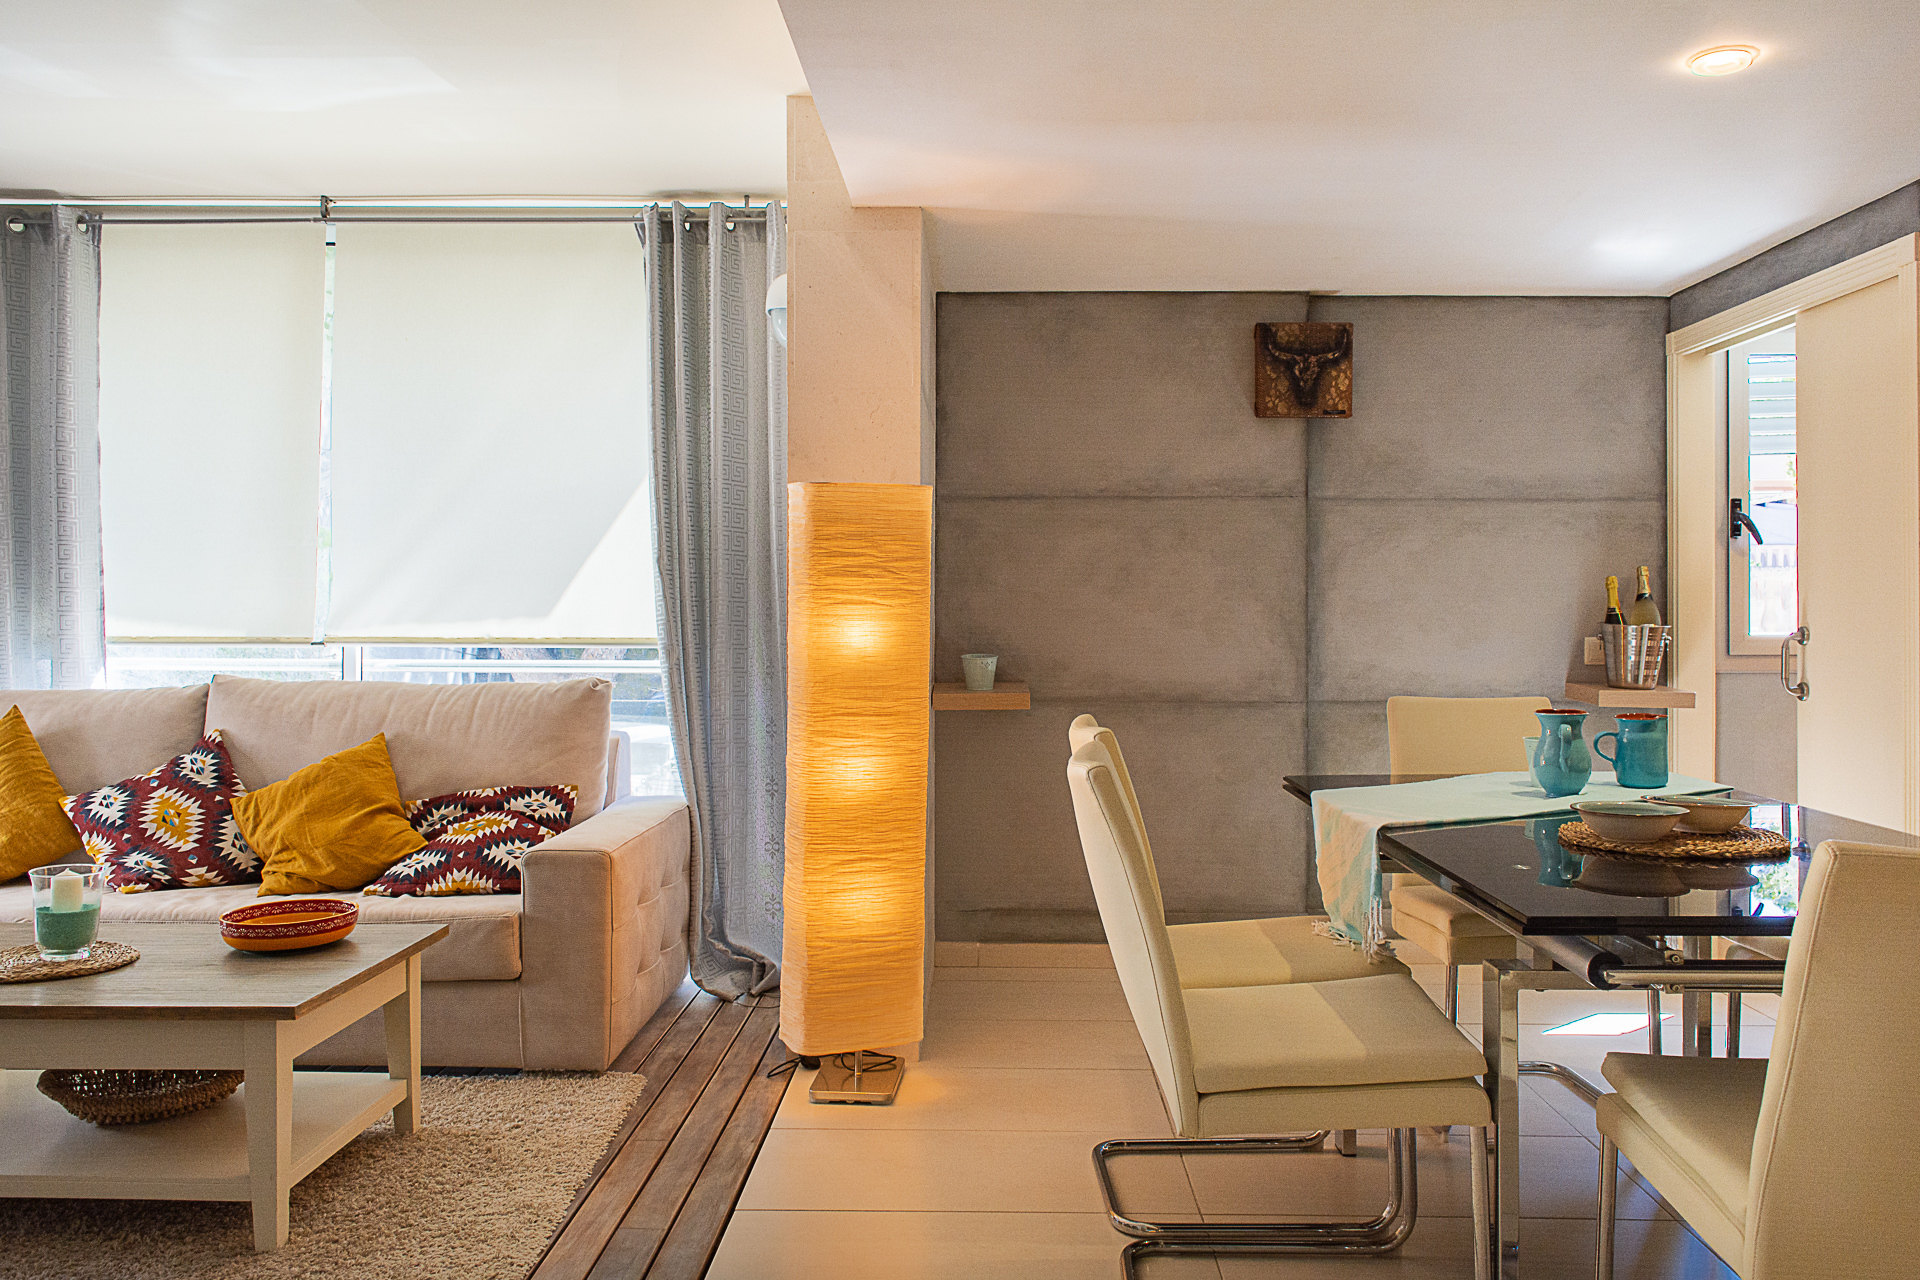 Precioso piso de 3 dormitorios cerca del puerto, 07590 Cala Ratjada (España), Piso en planta